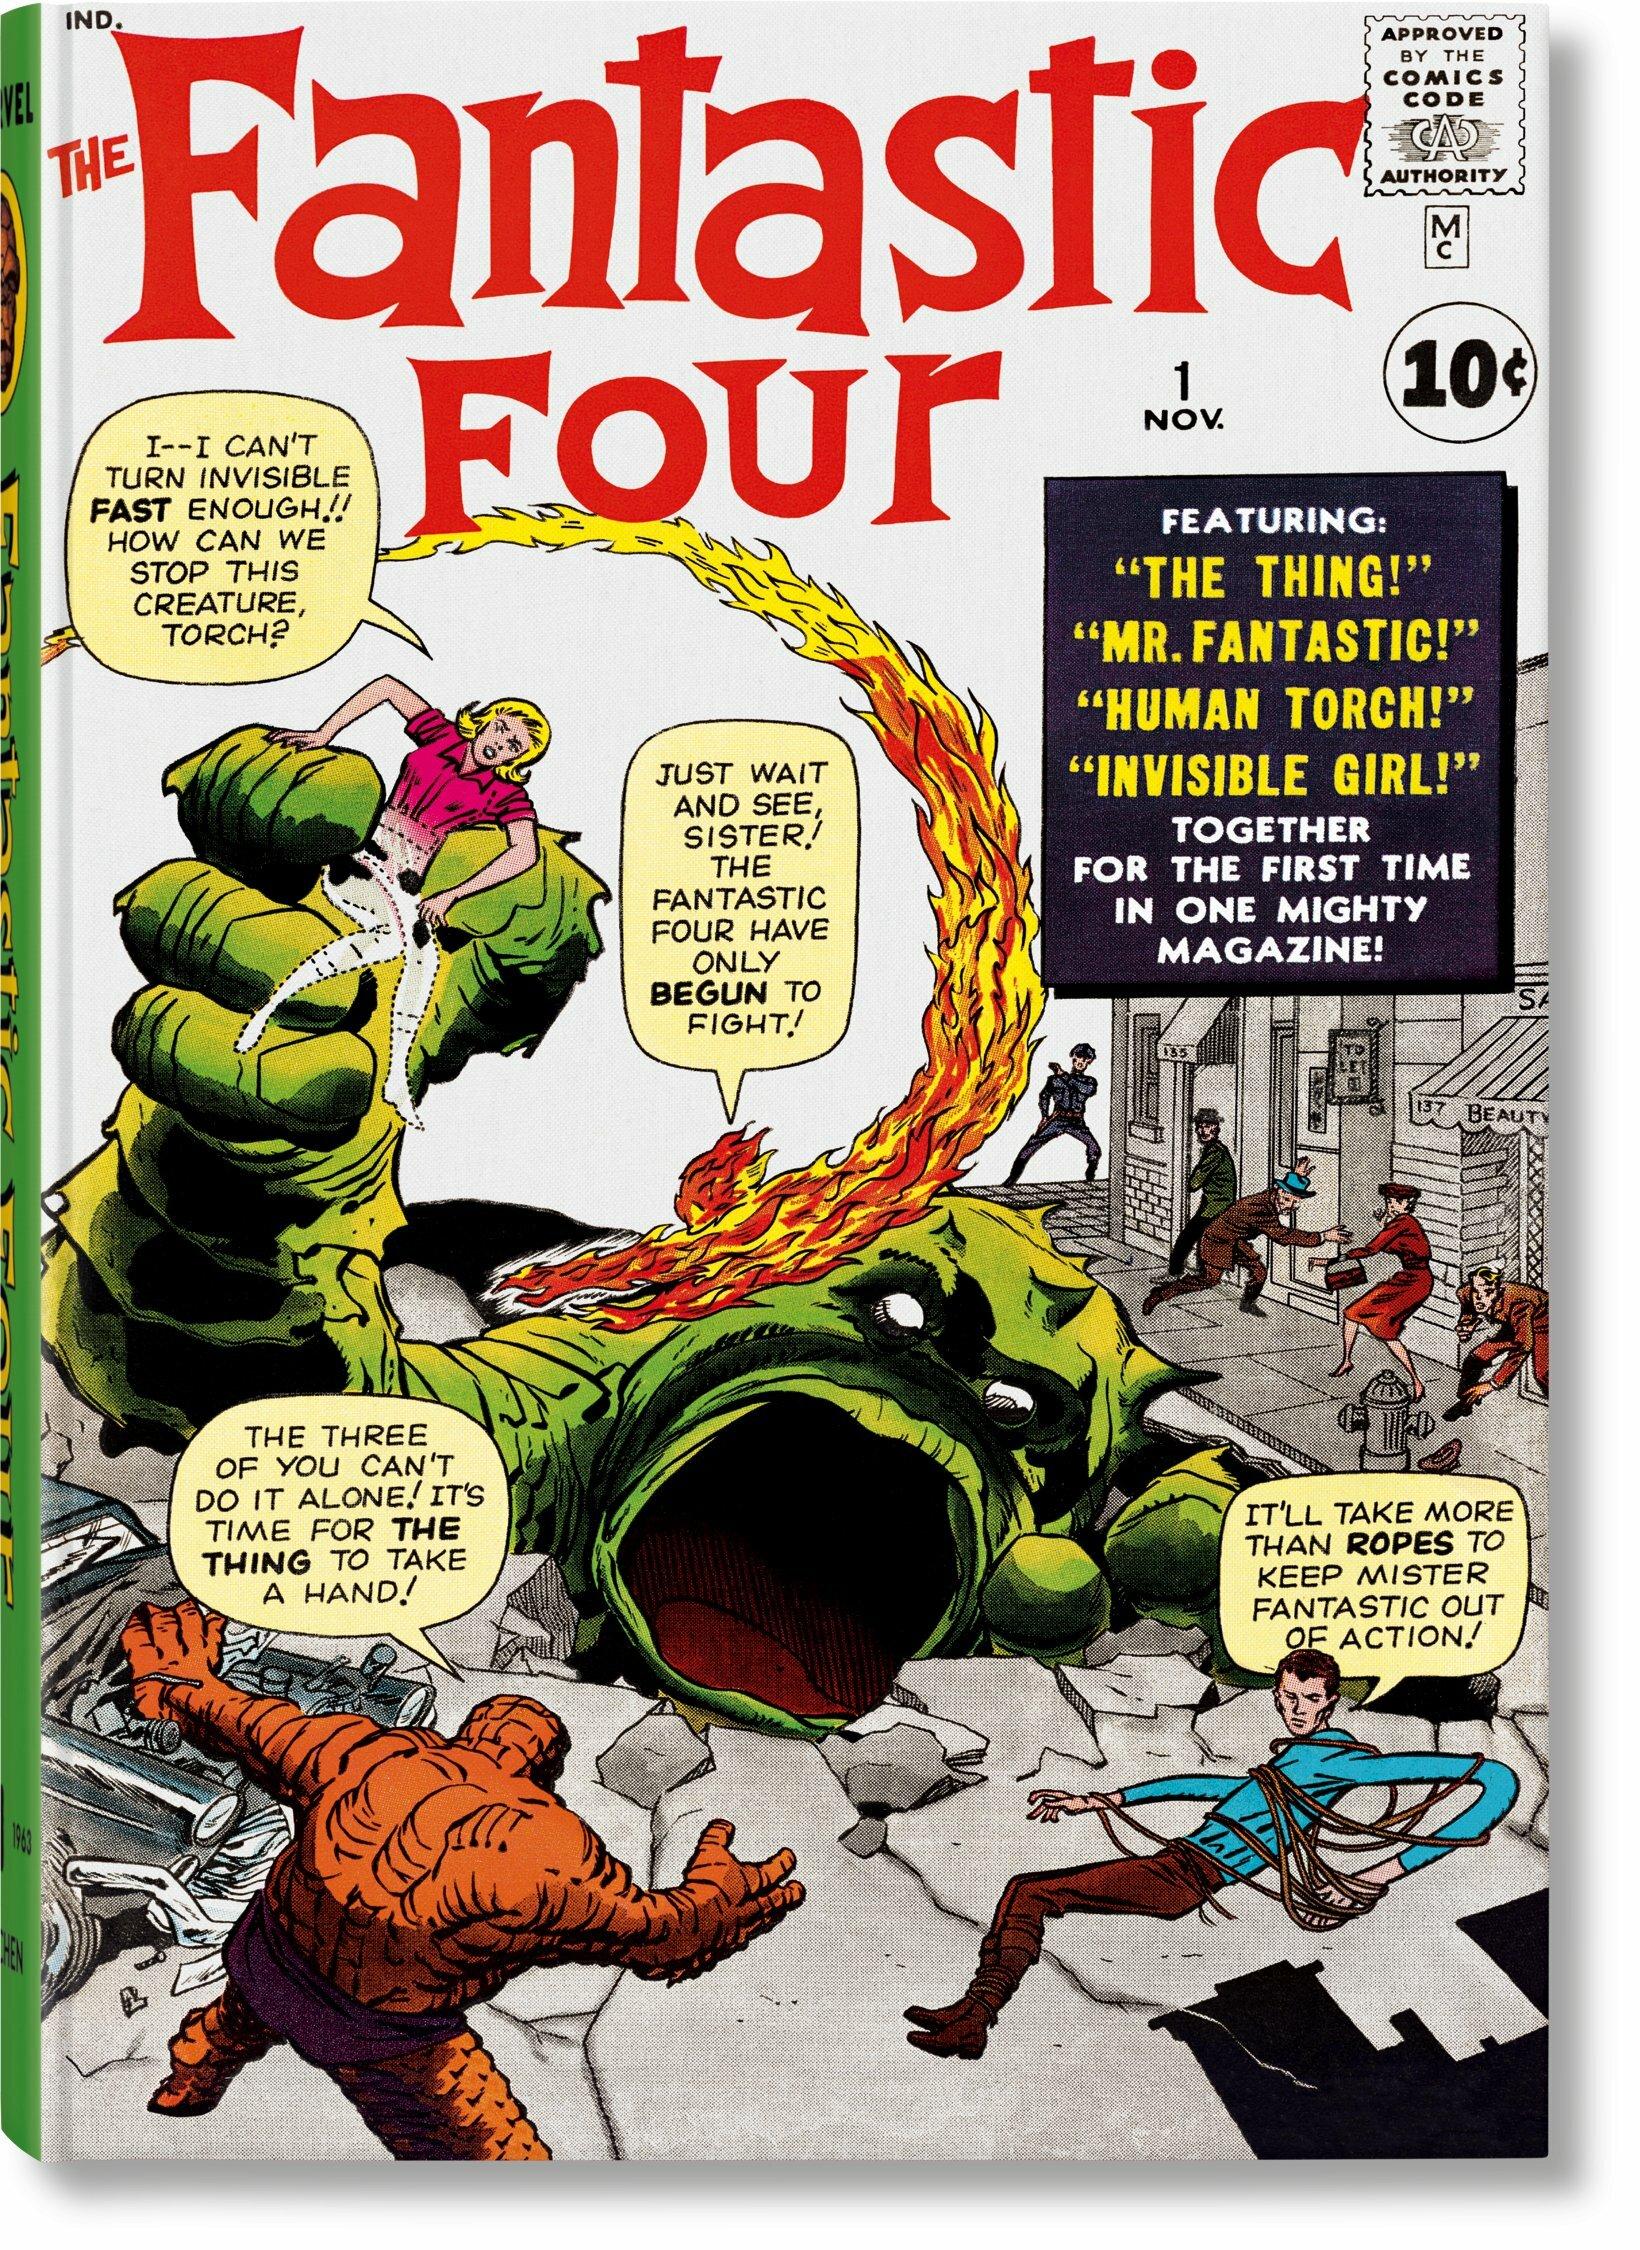 Die erste Familie des Marvel-Zeitalters.
Die ultimative Sammlung des größten Comicmagazins der Welt.
In der Hoffnung, die Verkaufsflaute bei Marvel in den frühen 1960er Jahren zu überwinden, kamen die Comic-Veteranen Stan Lee und Jack Kirby auf